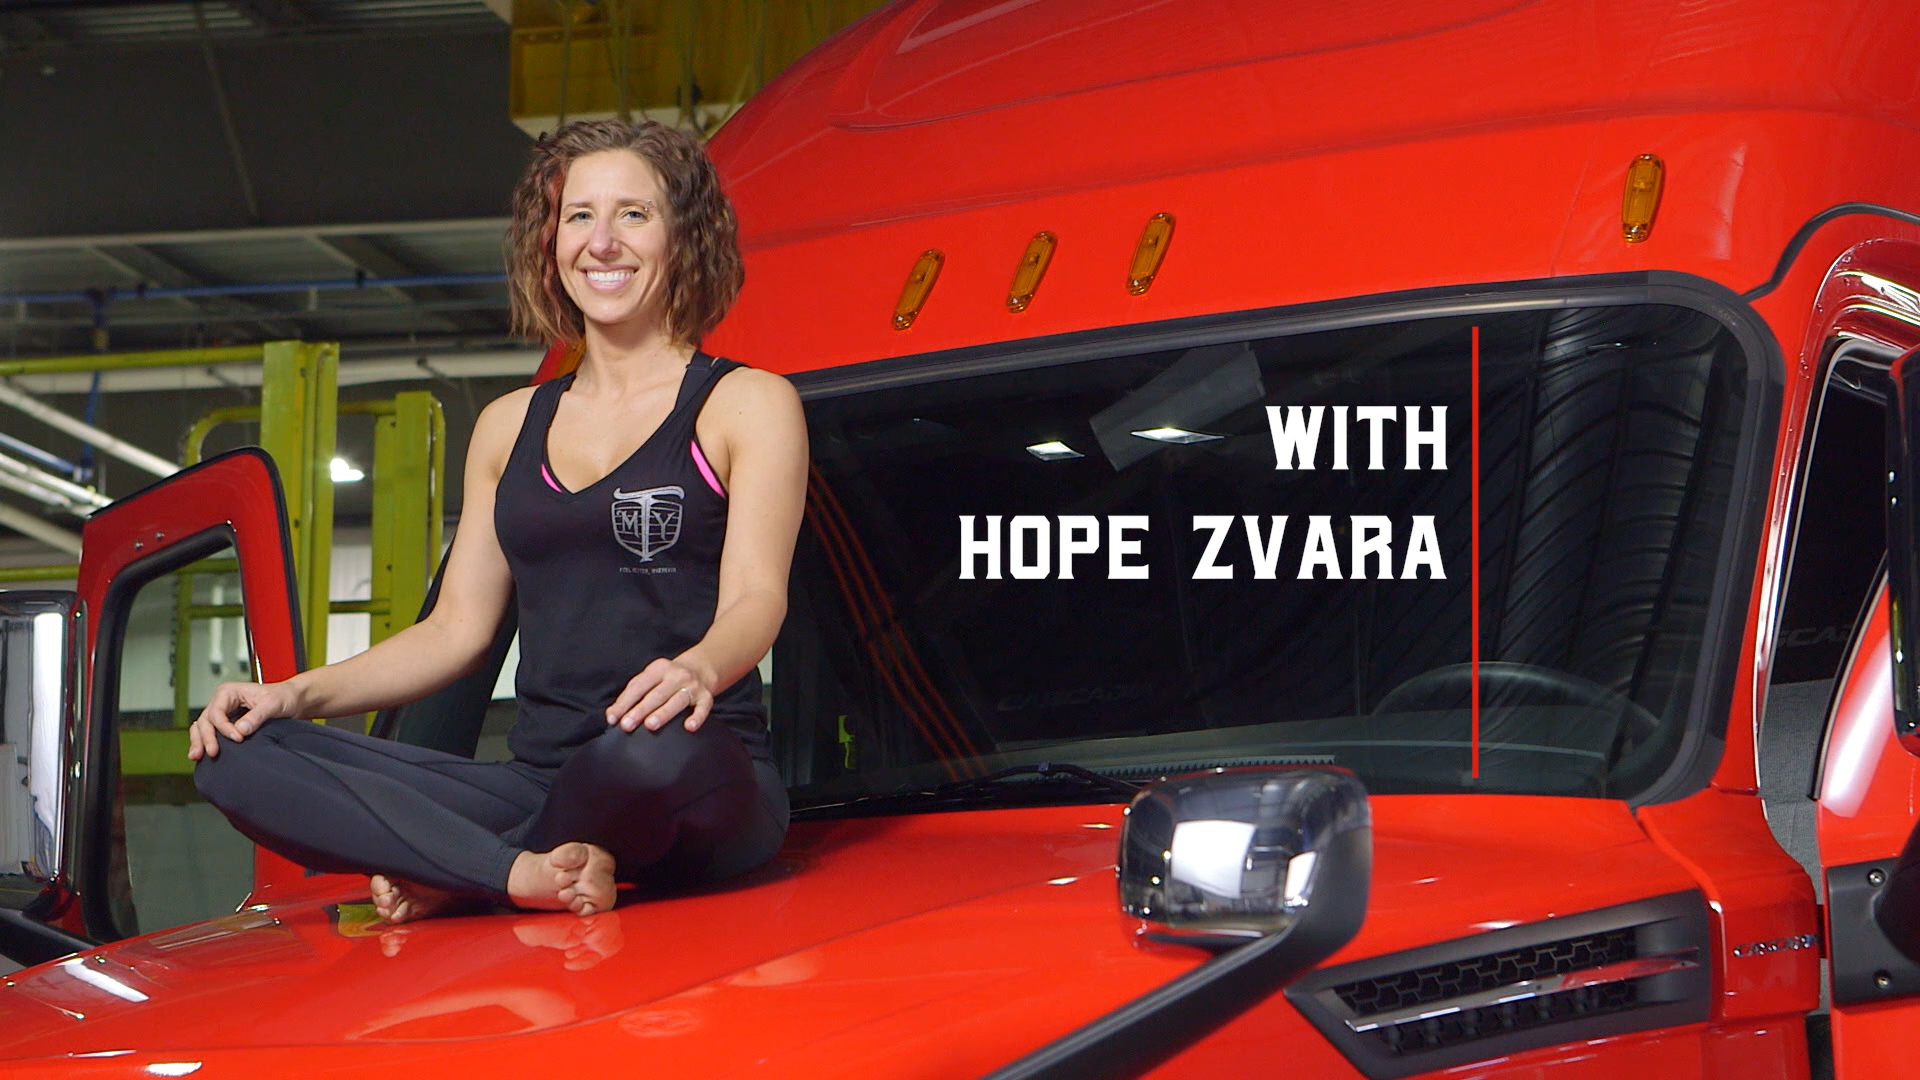 Mother Trucker Yoga's Hope Zvara